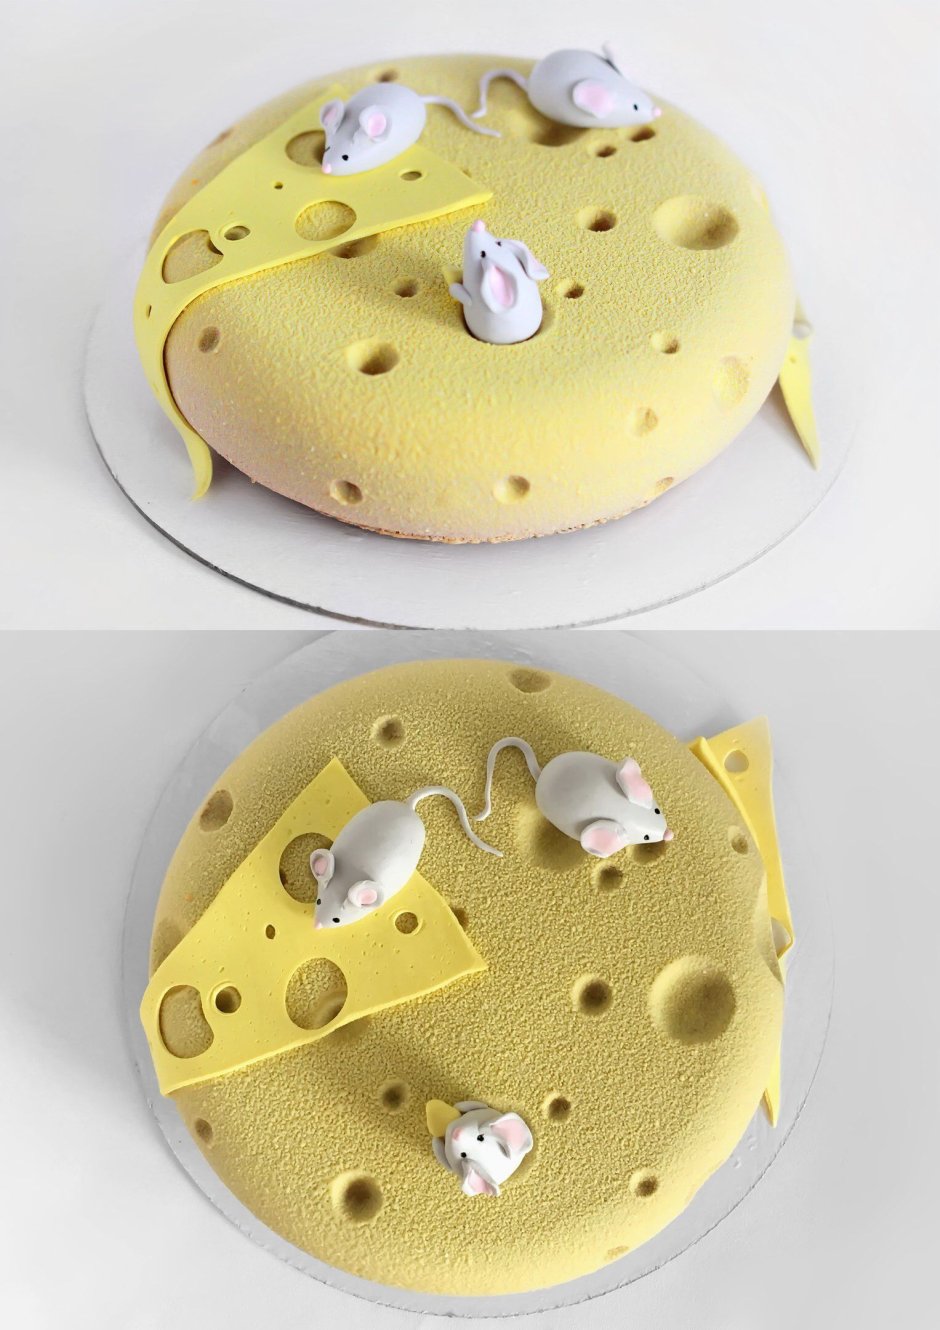 Торт в виде сыра с мышками